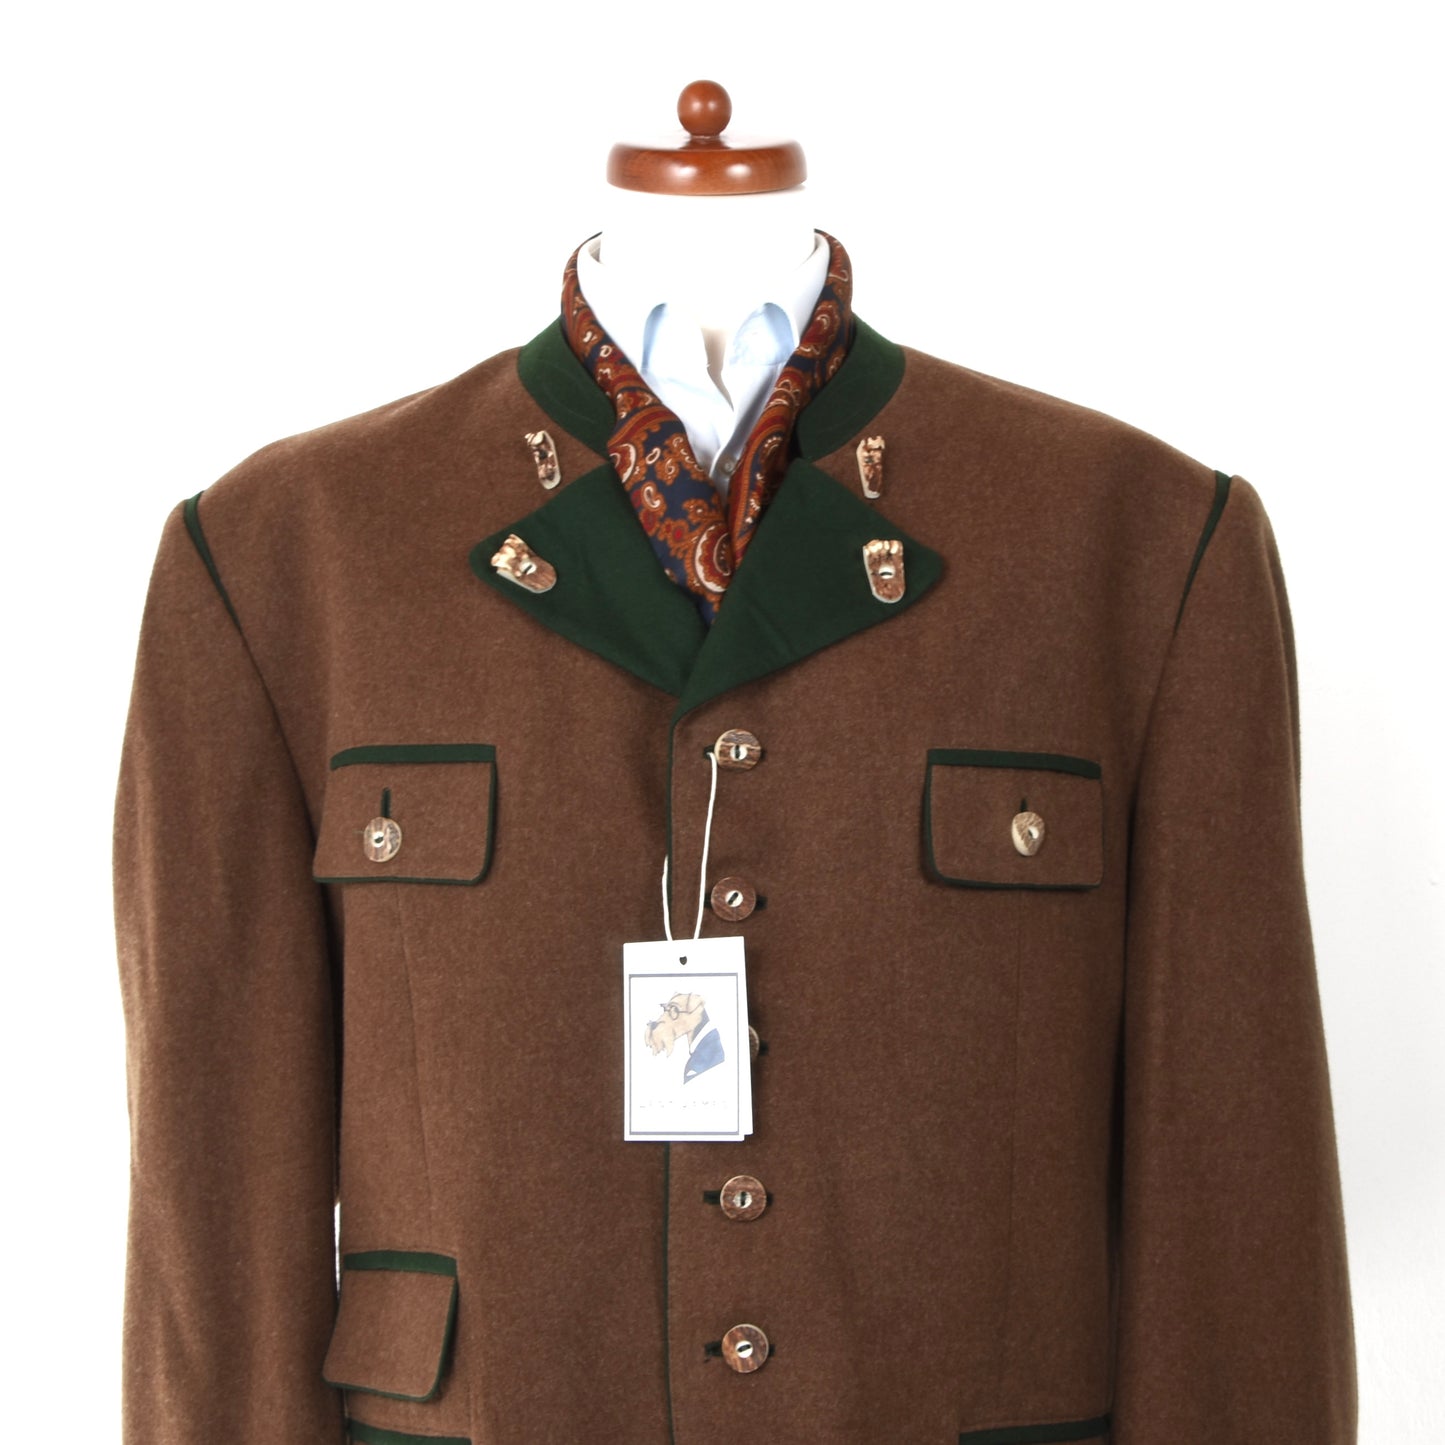 Loden Fürst Wool Janker/Jacket ca. 67cm - Brown